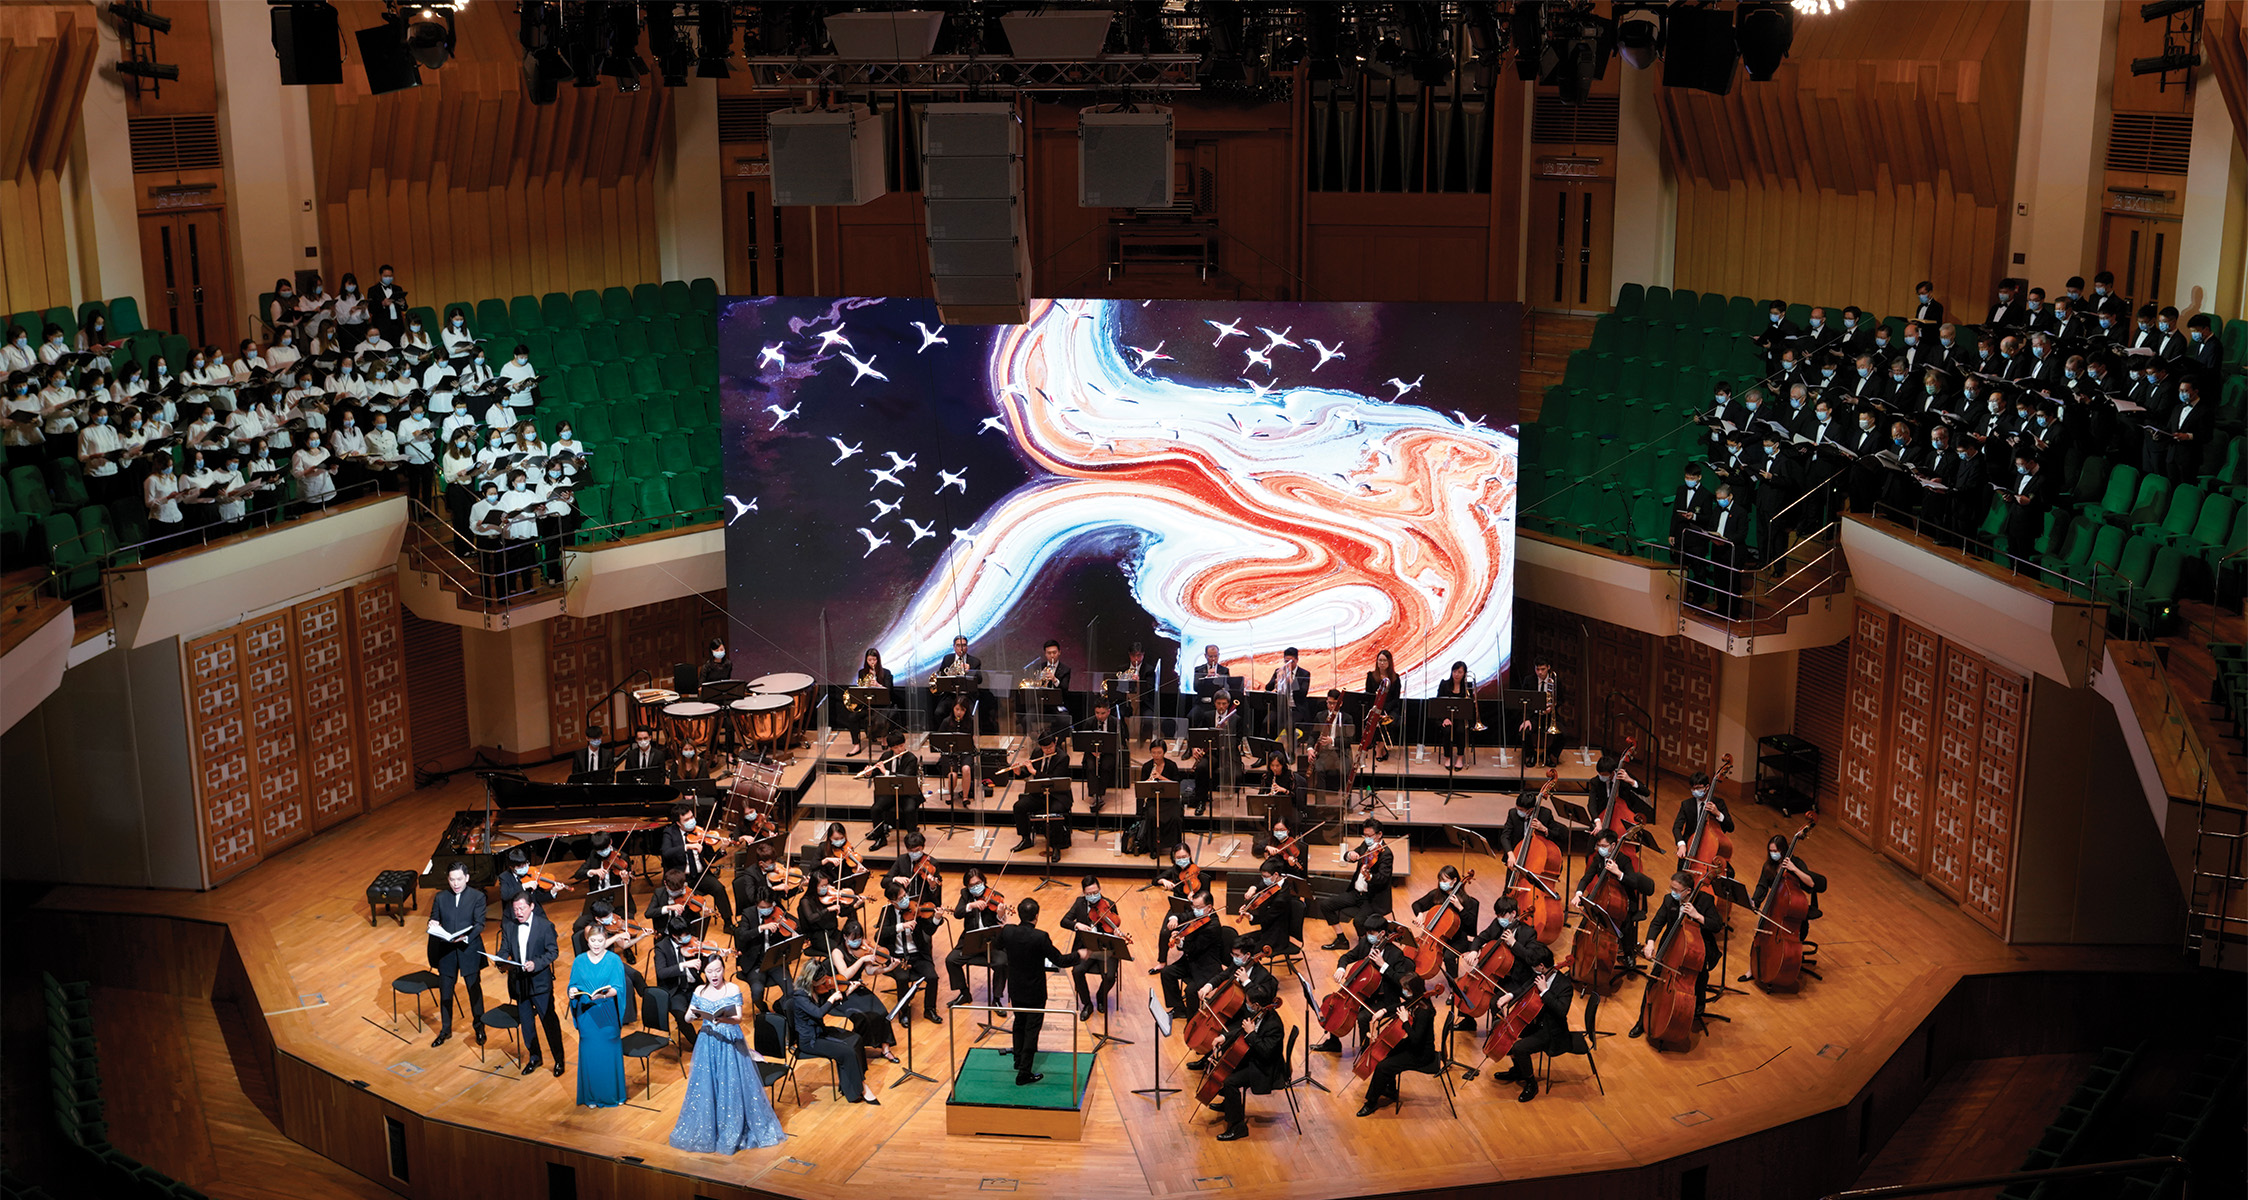 Aerial Symphony/ Concert Hall, Hong Kong Cultural Centre. Photos credit: © Hong Kong Orchestra